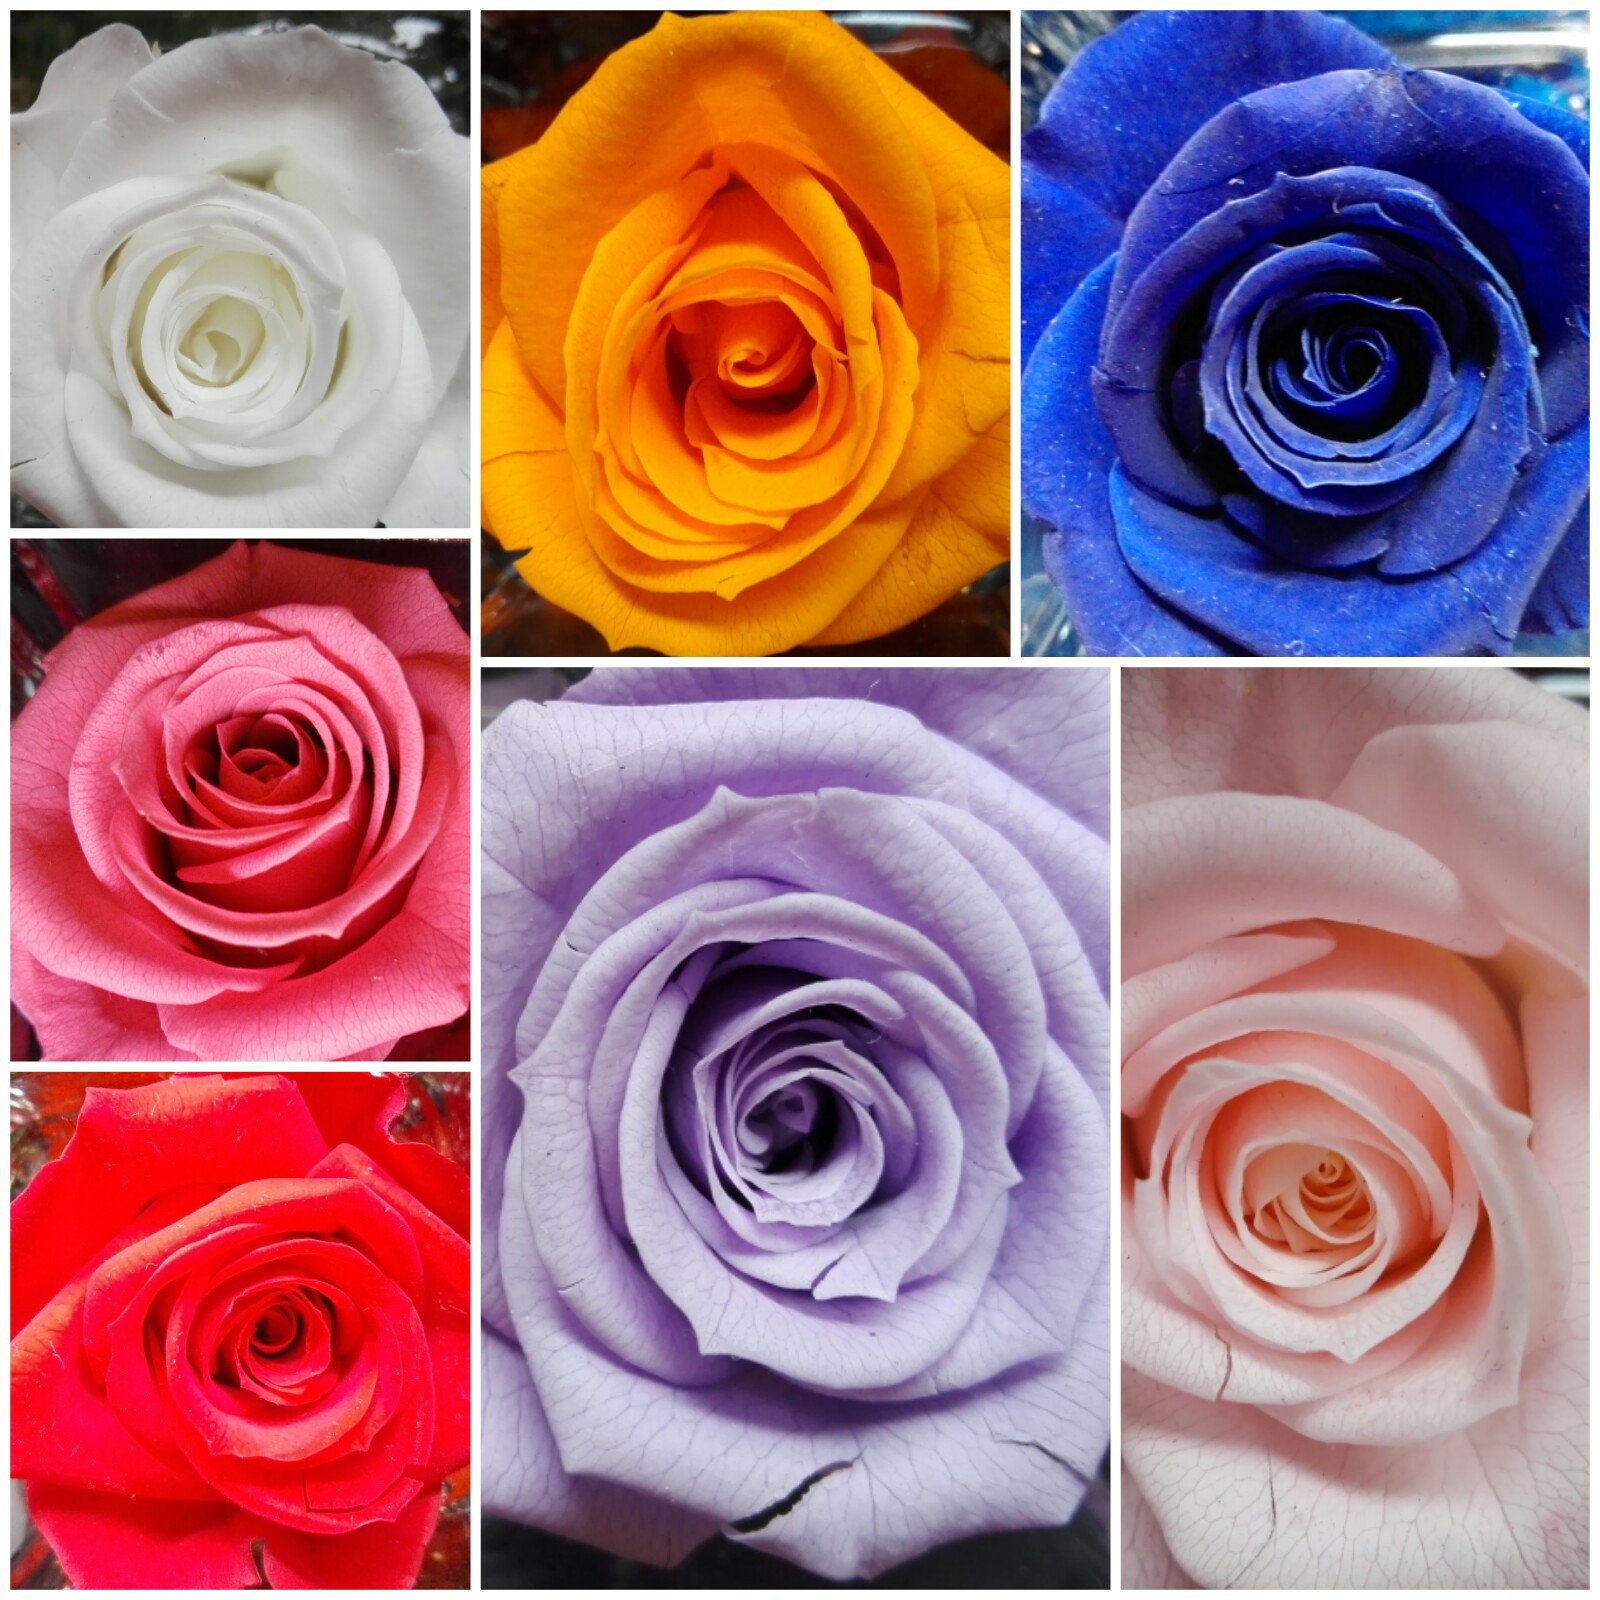 Rose Stabilizzate Colori Disponibili Idee Regalo Fioreria Bruseghini Besenello Trento